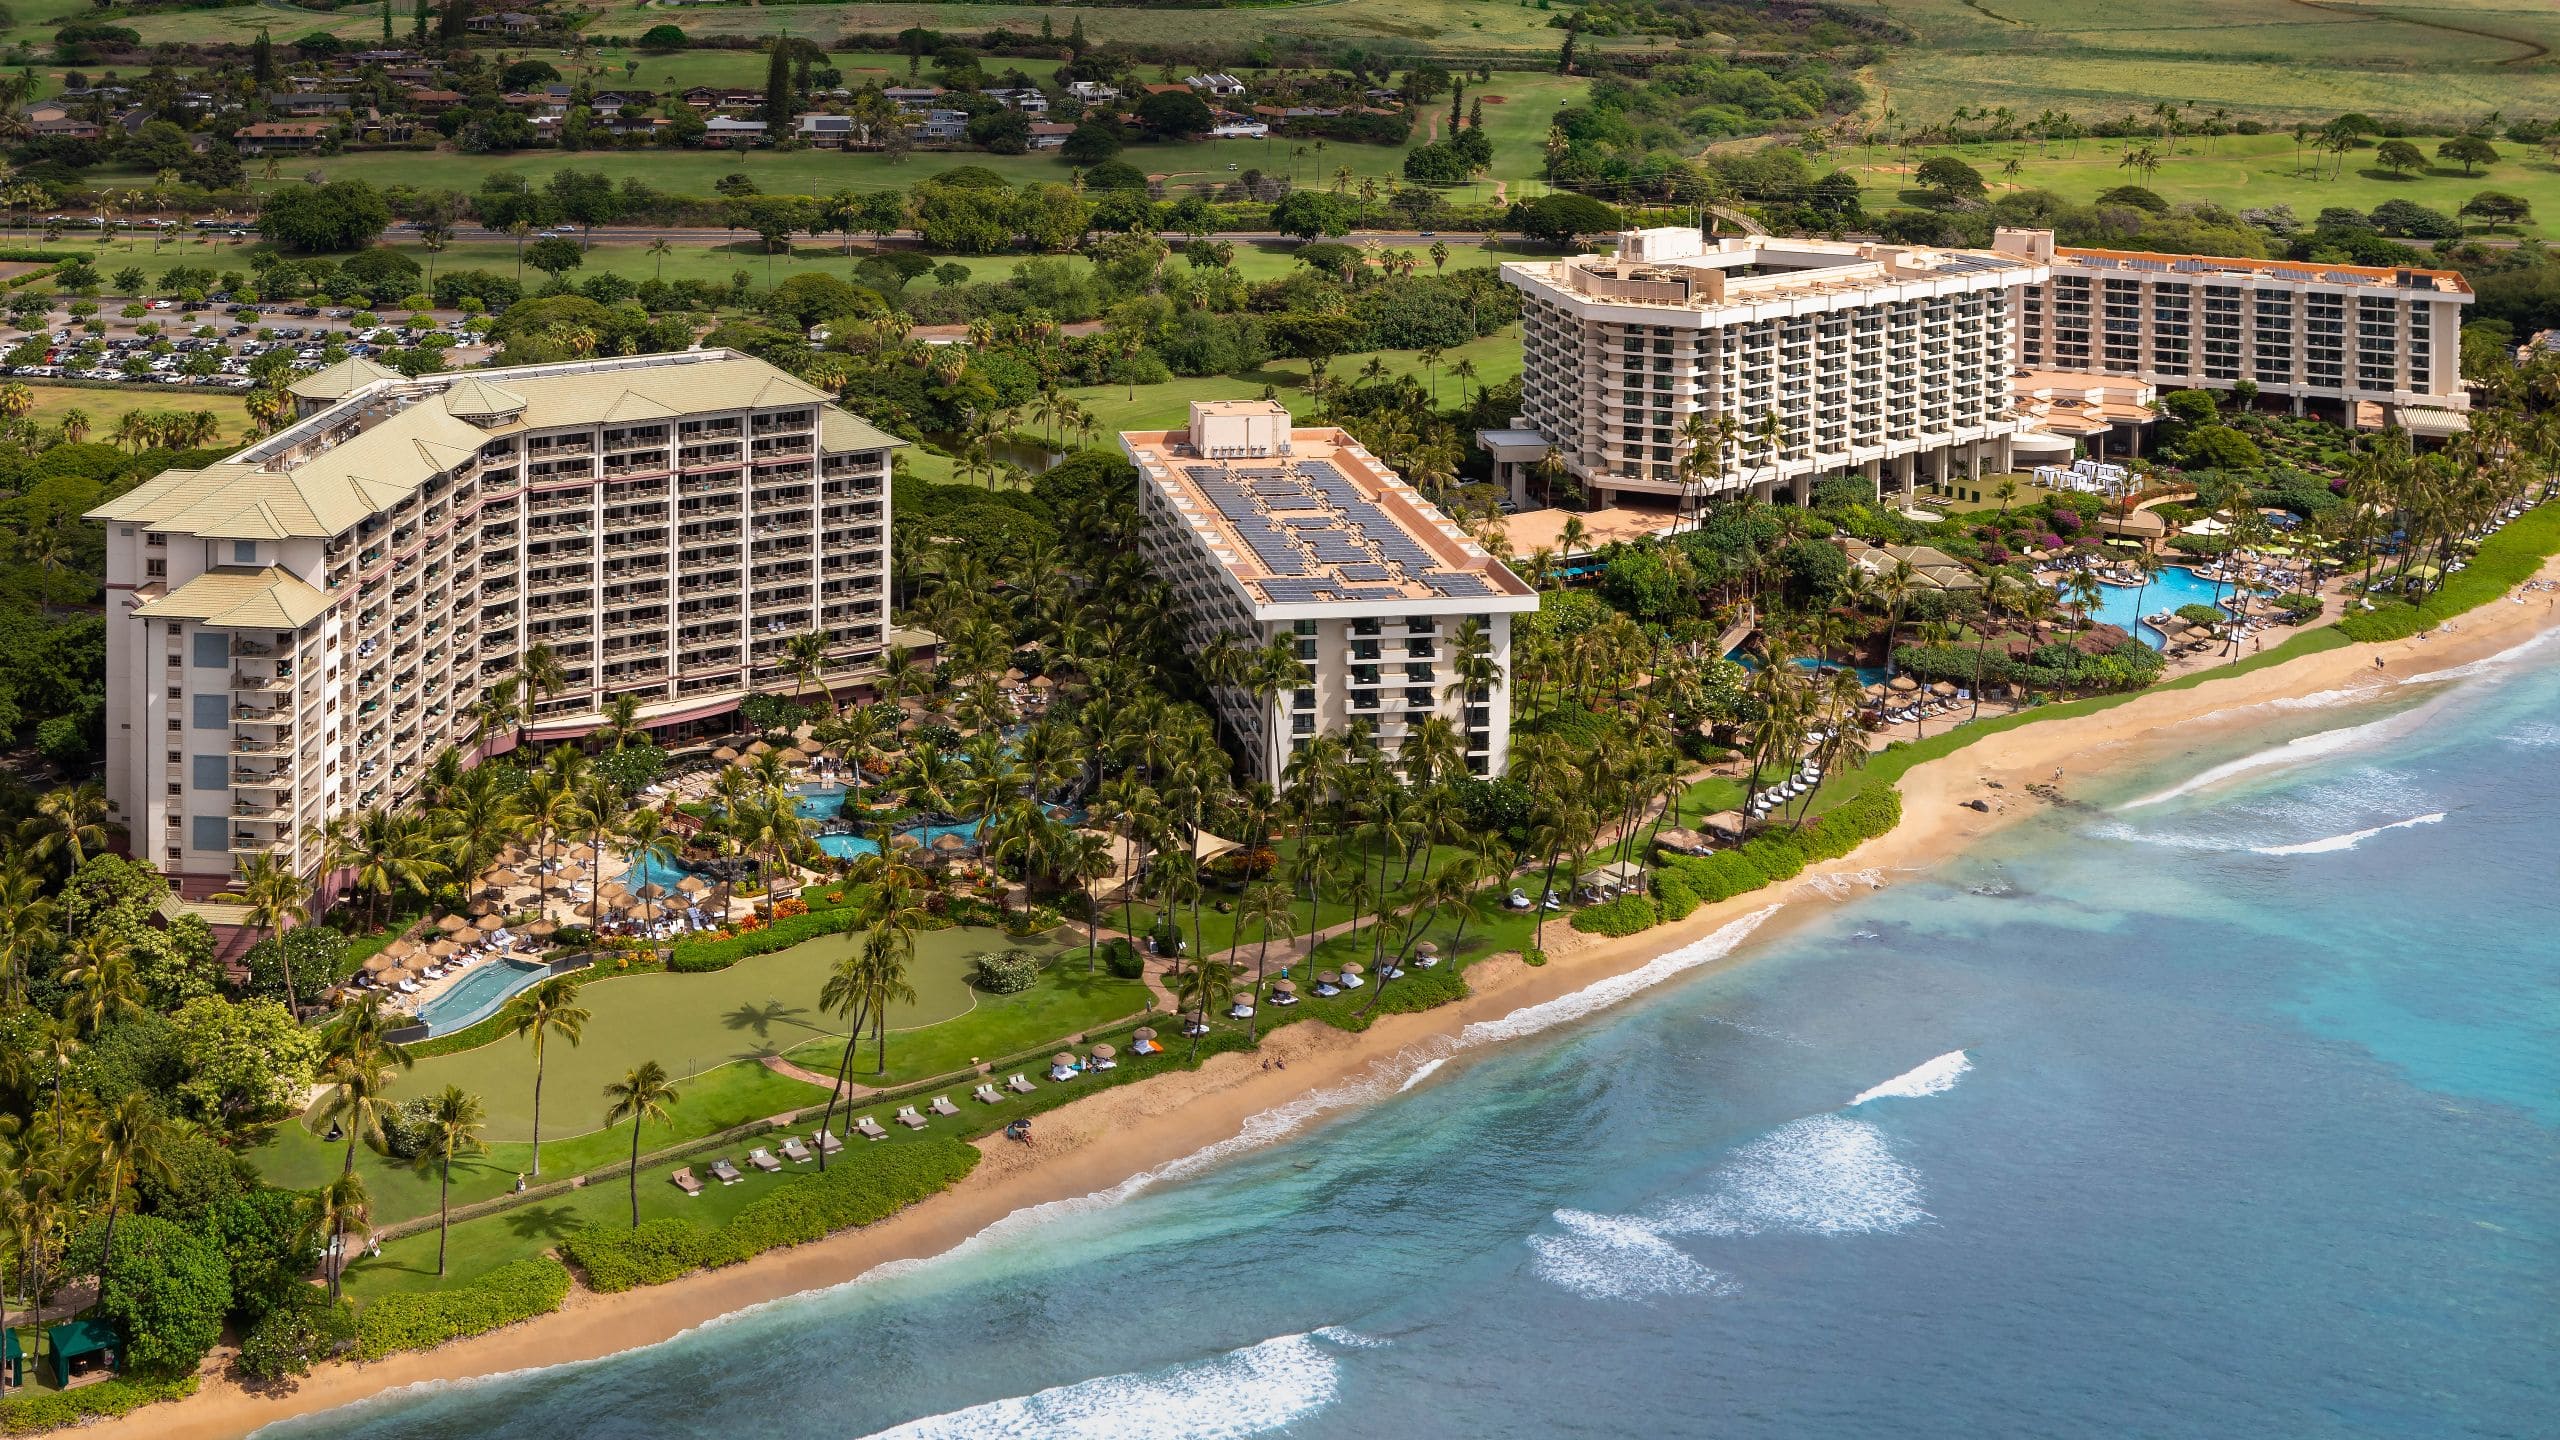 Hyatt Regency Maui Resort and Spa Exterior Aerial View